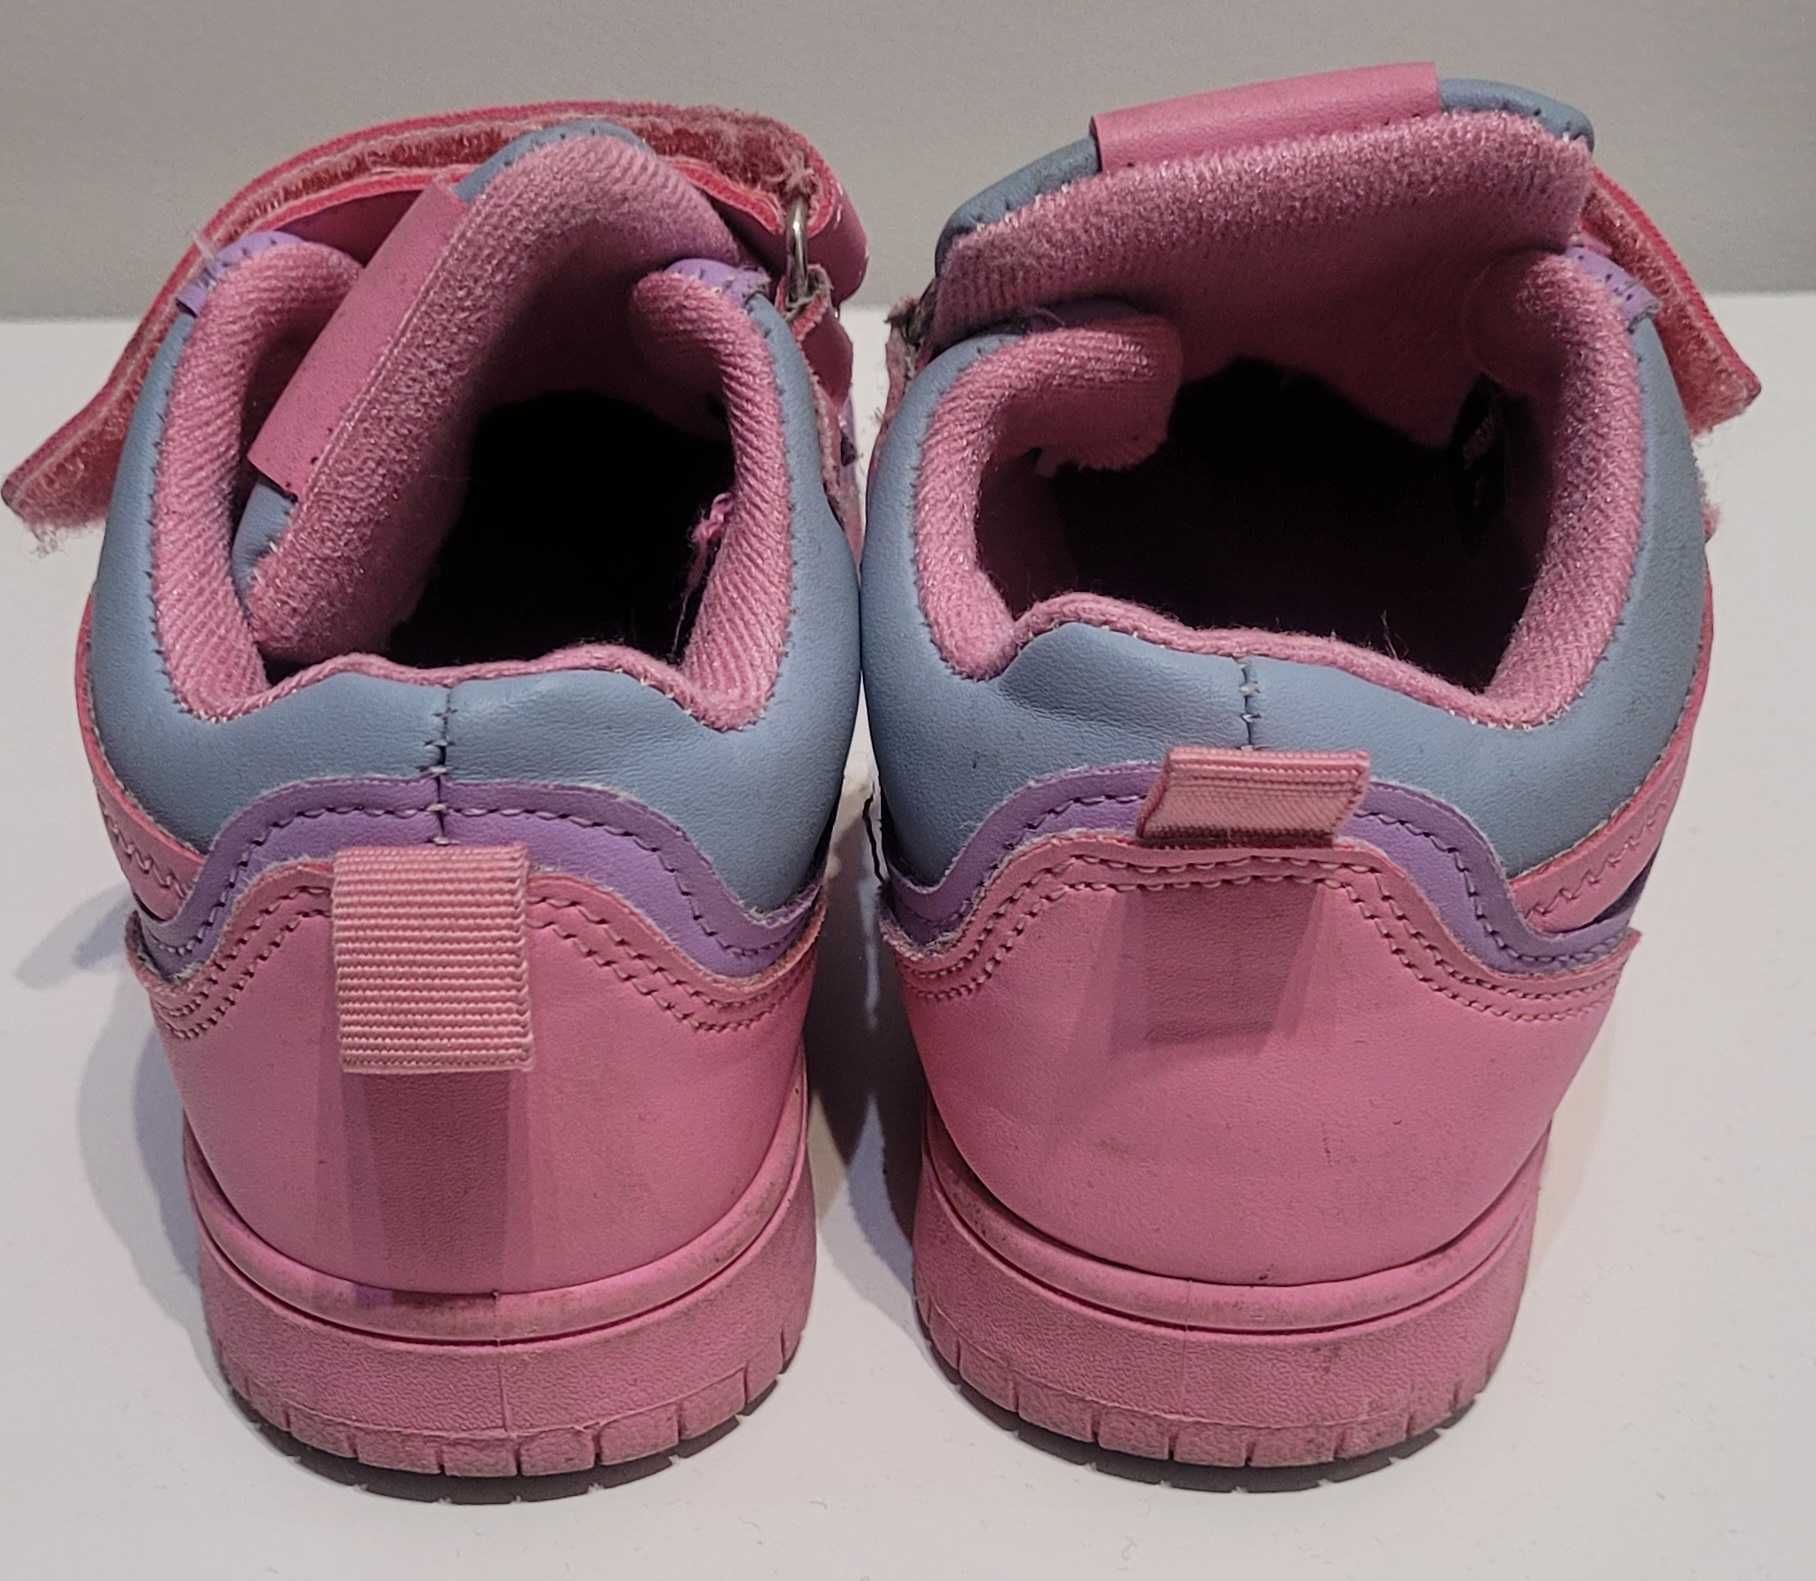 Adidasy fioletowo-różowe 27 dł.wkł.17.4 cm